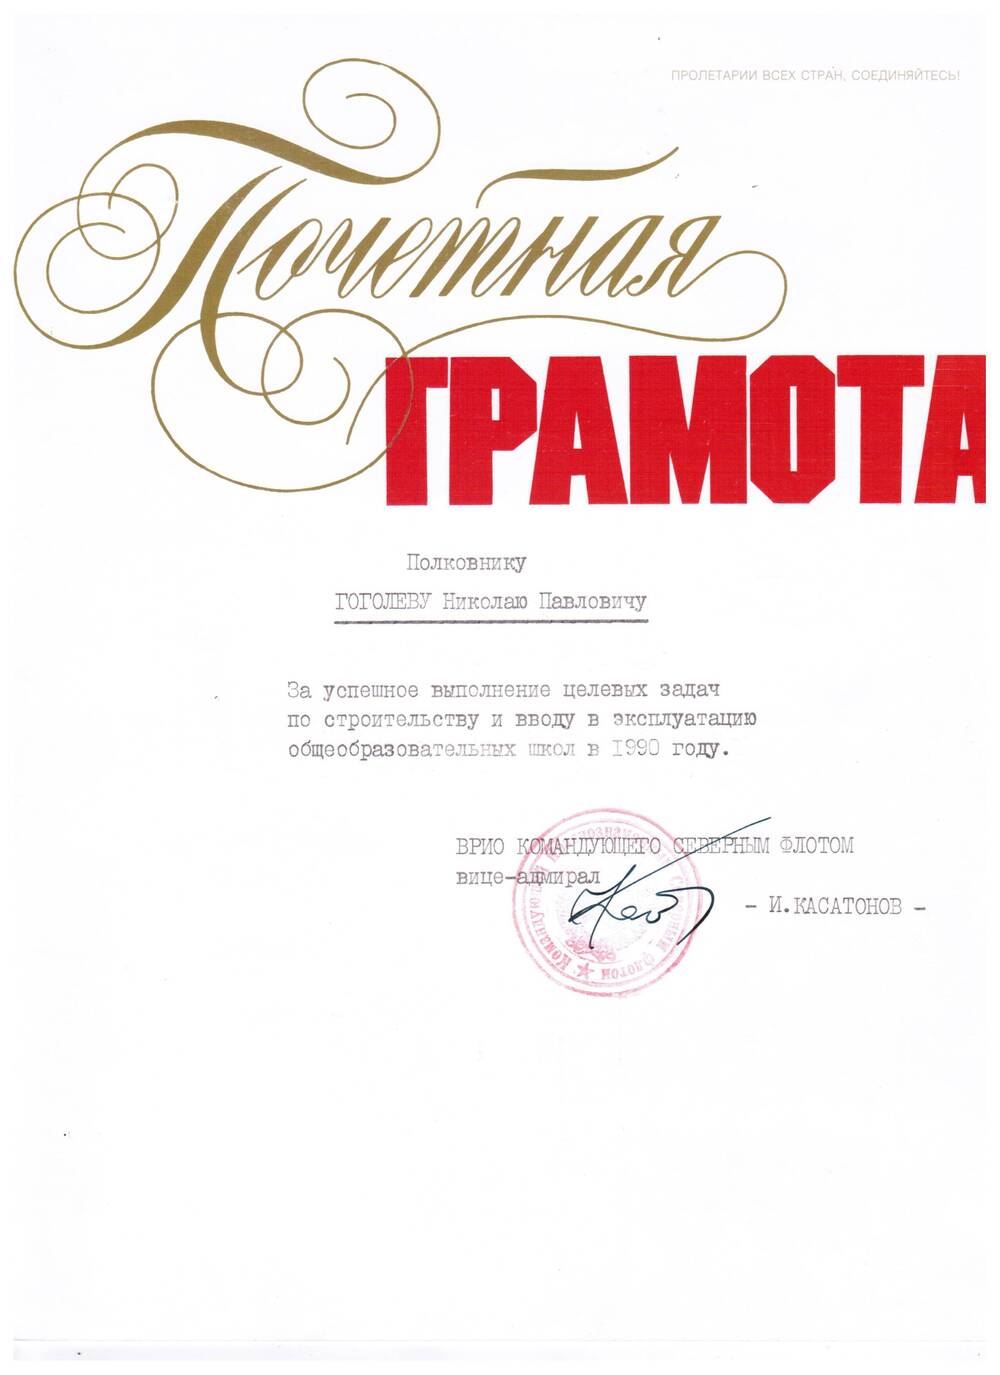 Почетная грамота подполковнику Гоголеву Н.П. За успешное выполнение… от ВРИО командующего СФ И.Касатонова